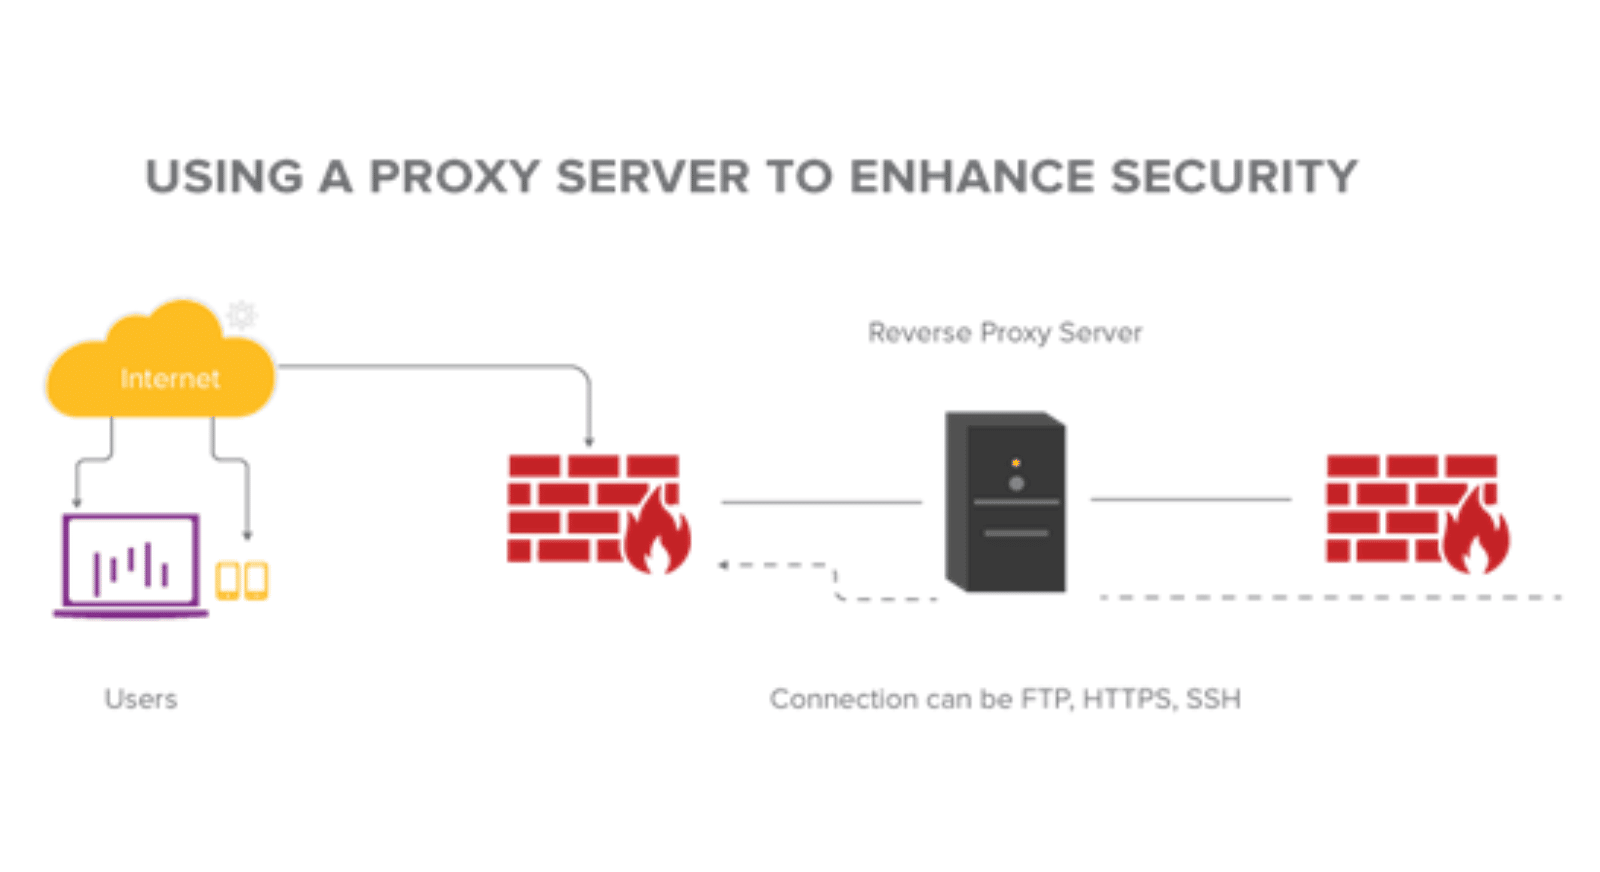 Ein Proxyserver kann als Firewall gegen Angriffe dienen